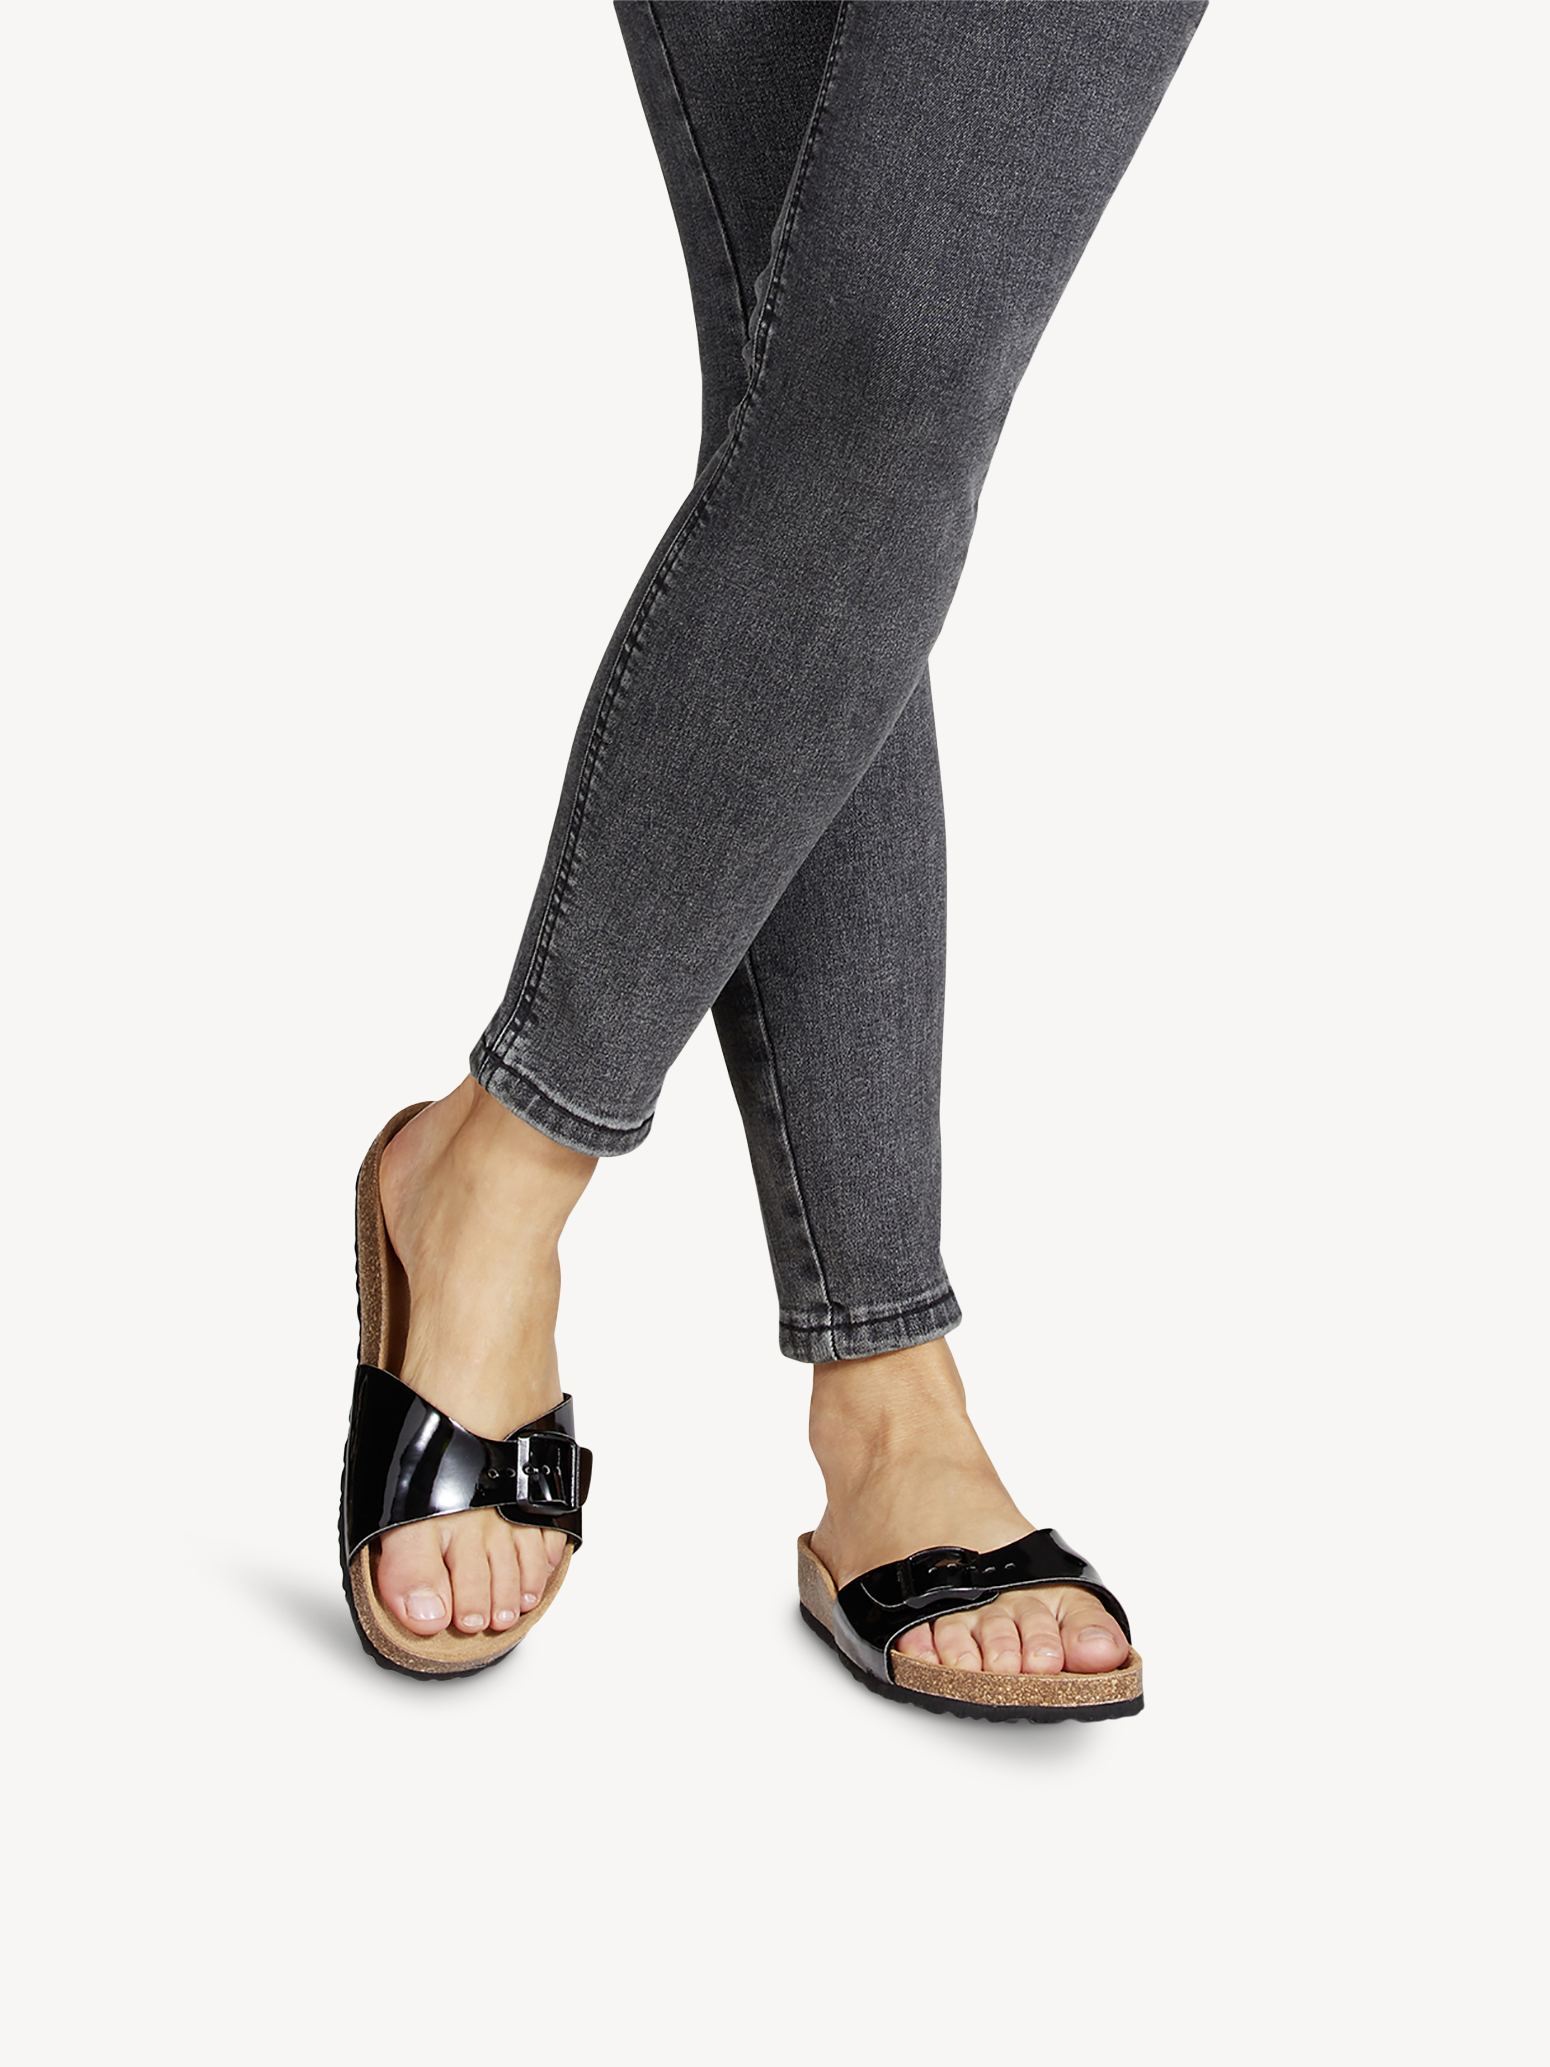 Туфли летние открытые жен. (черный лаковый) - изображение №1